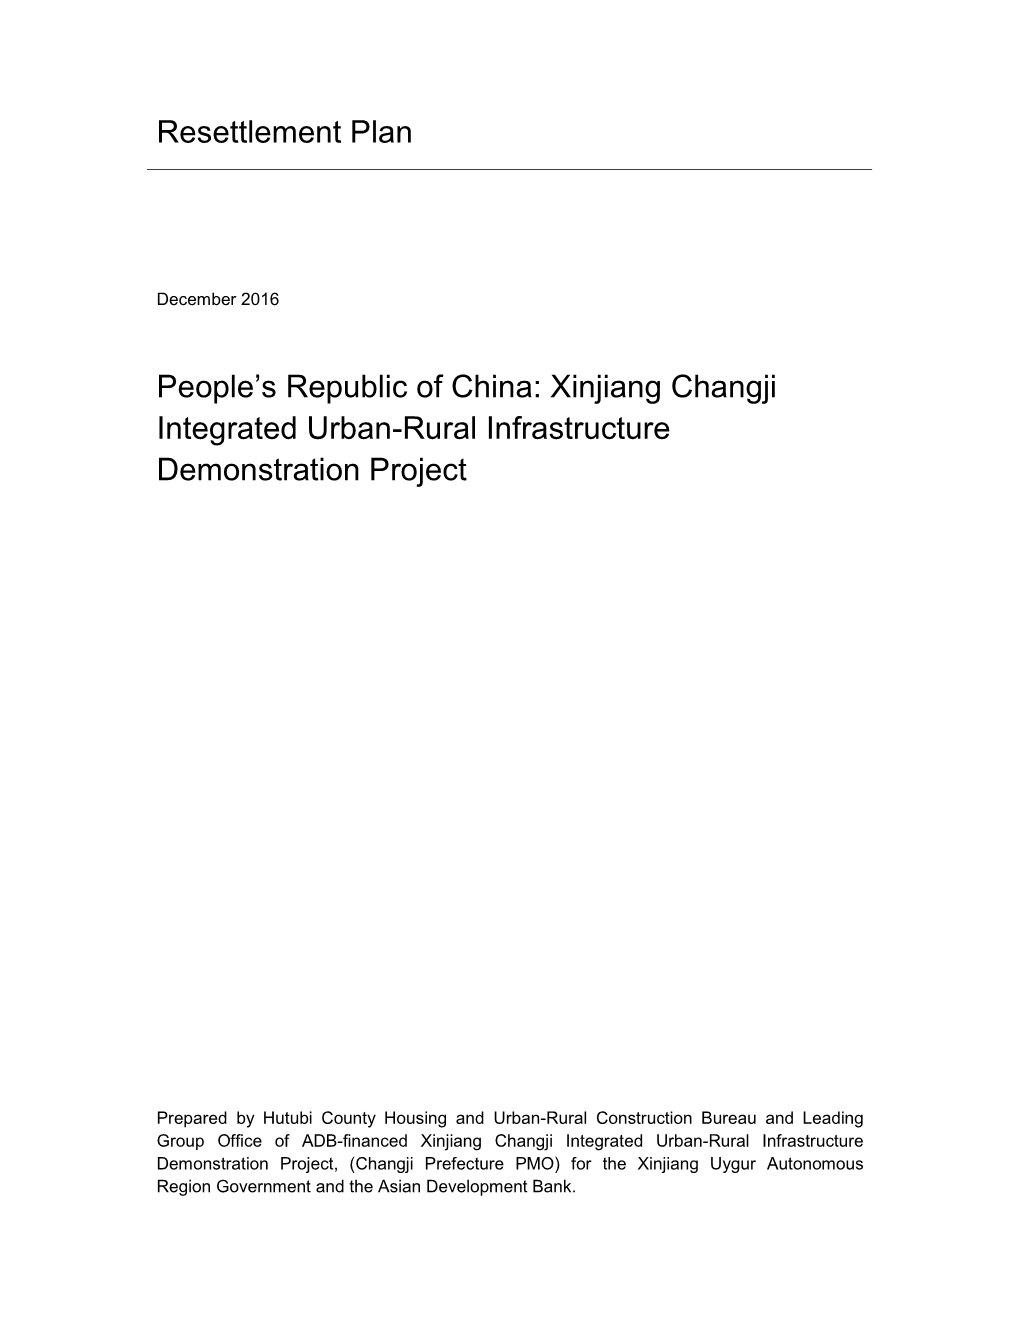 Resettlement Plan People's Republic of China: Xinjiang Changji